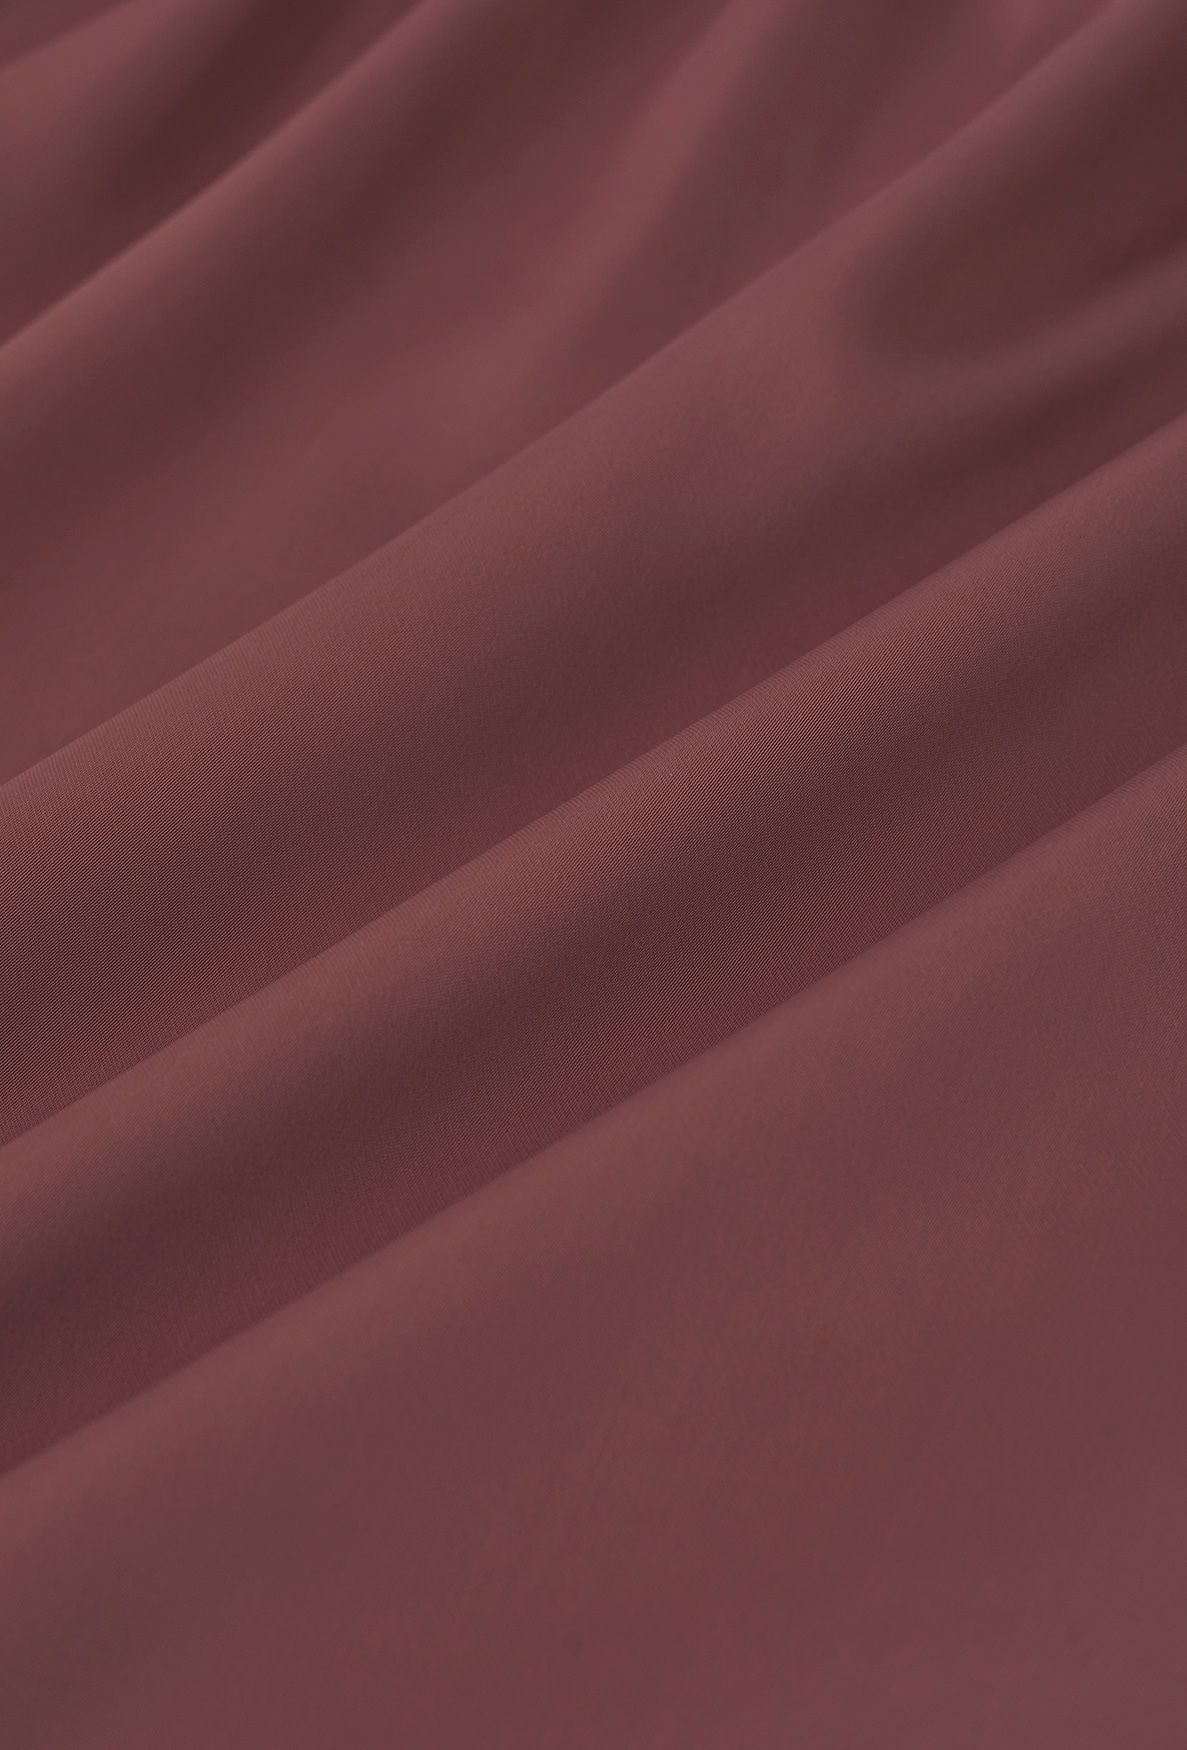 Falda midi de satén asimétrica con volantes en rojo óxido